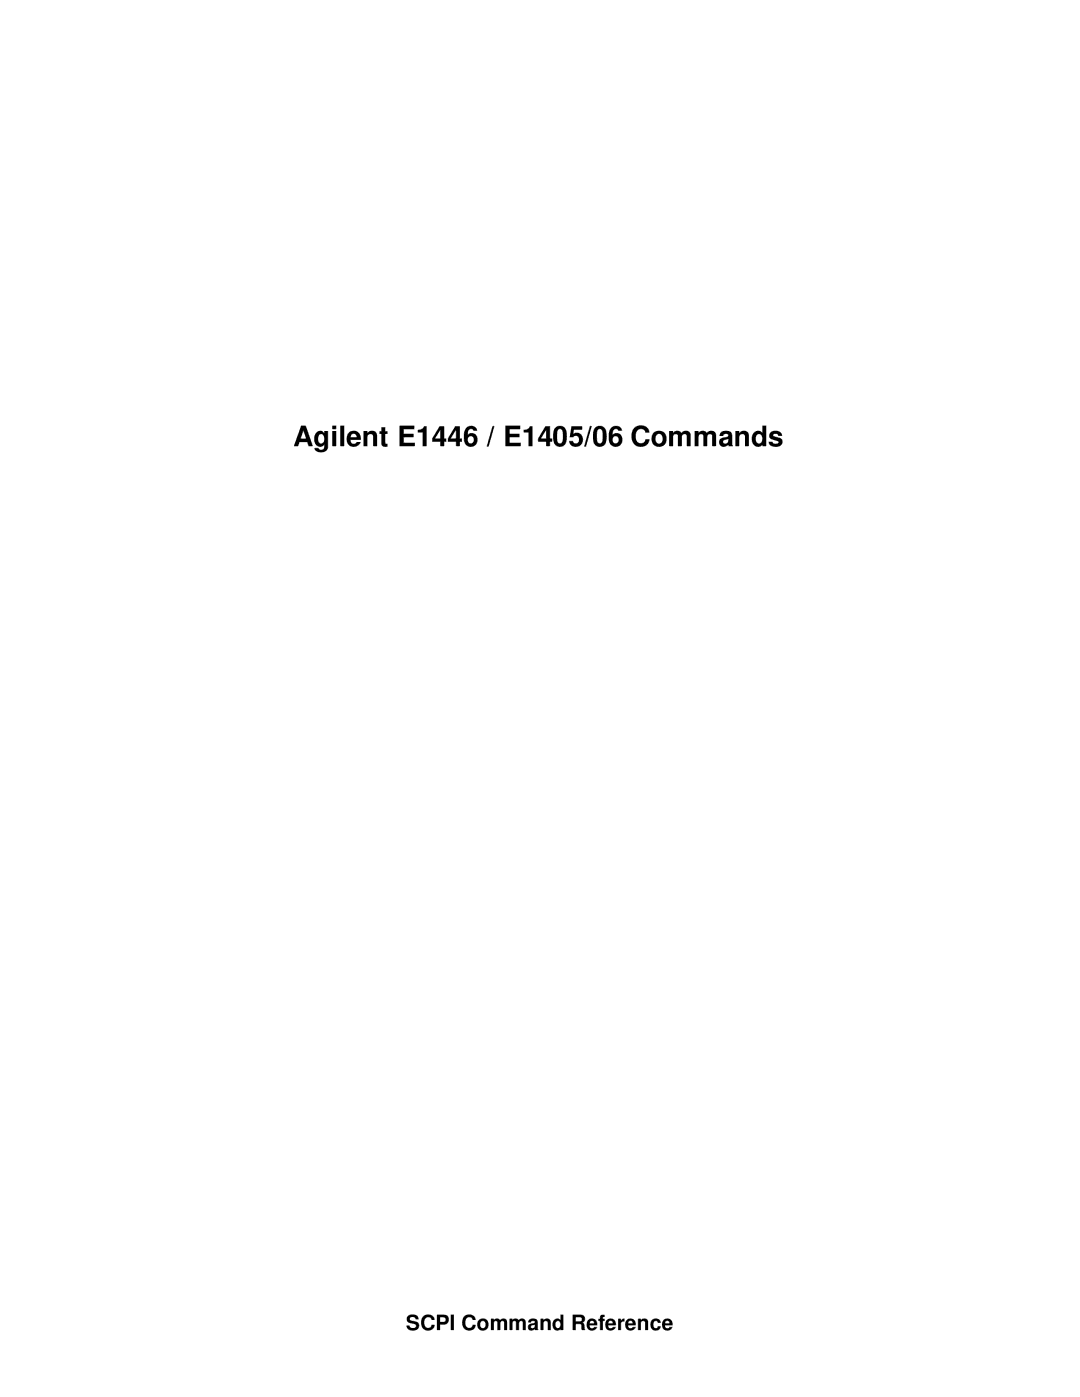 Agilent Technologies E1446A user manual Agilent E1446 / E1405/06 Commands 